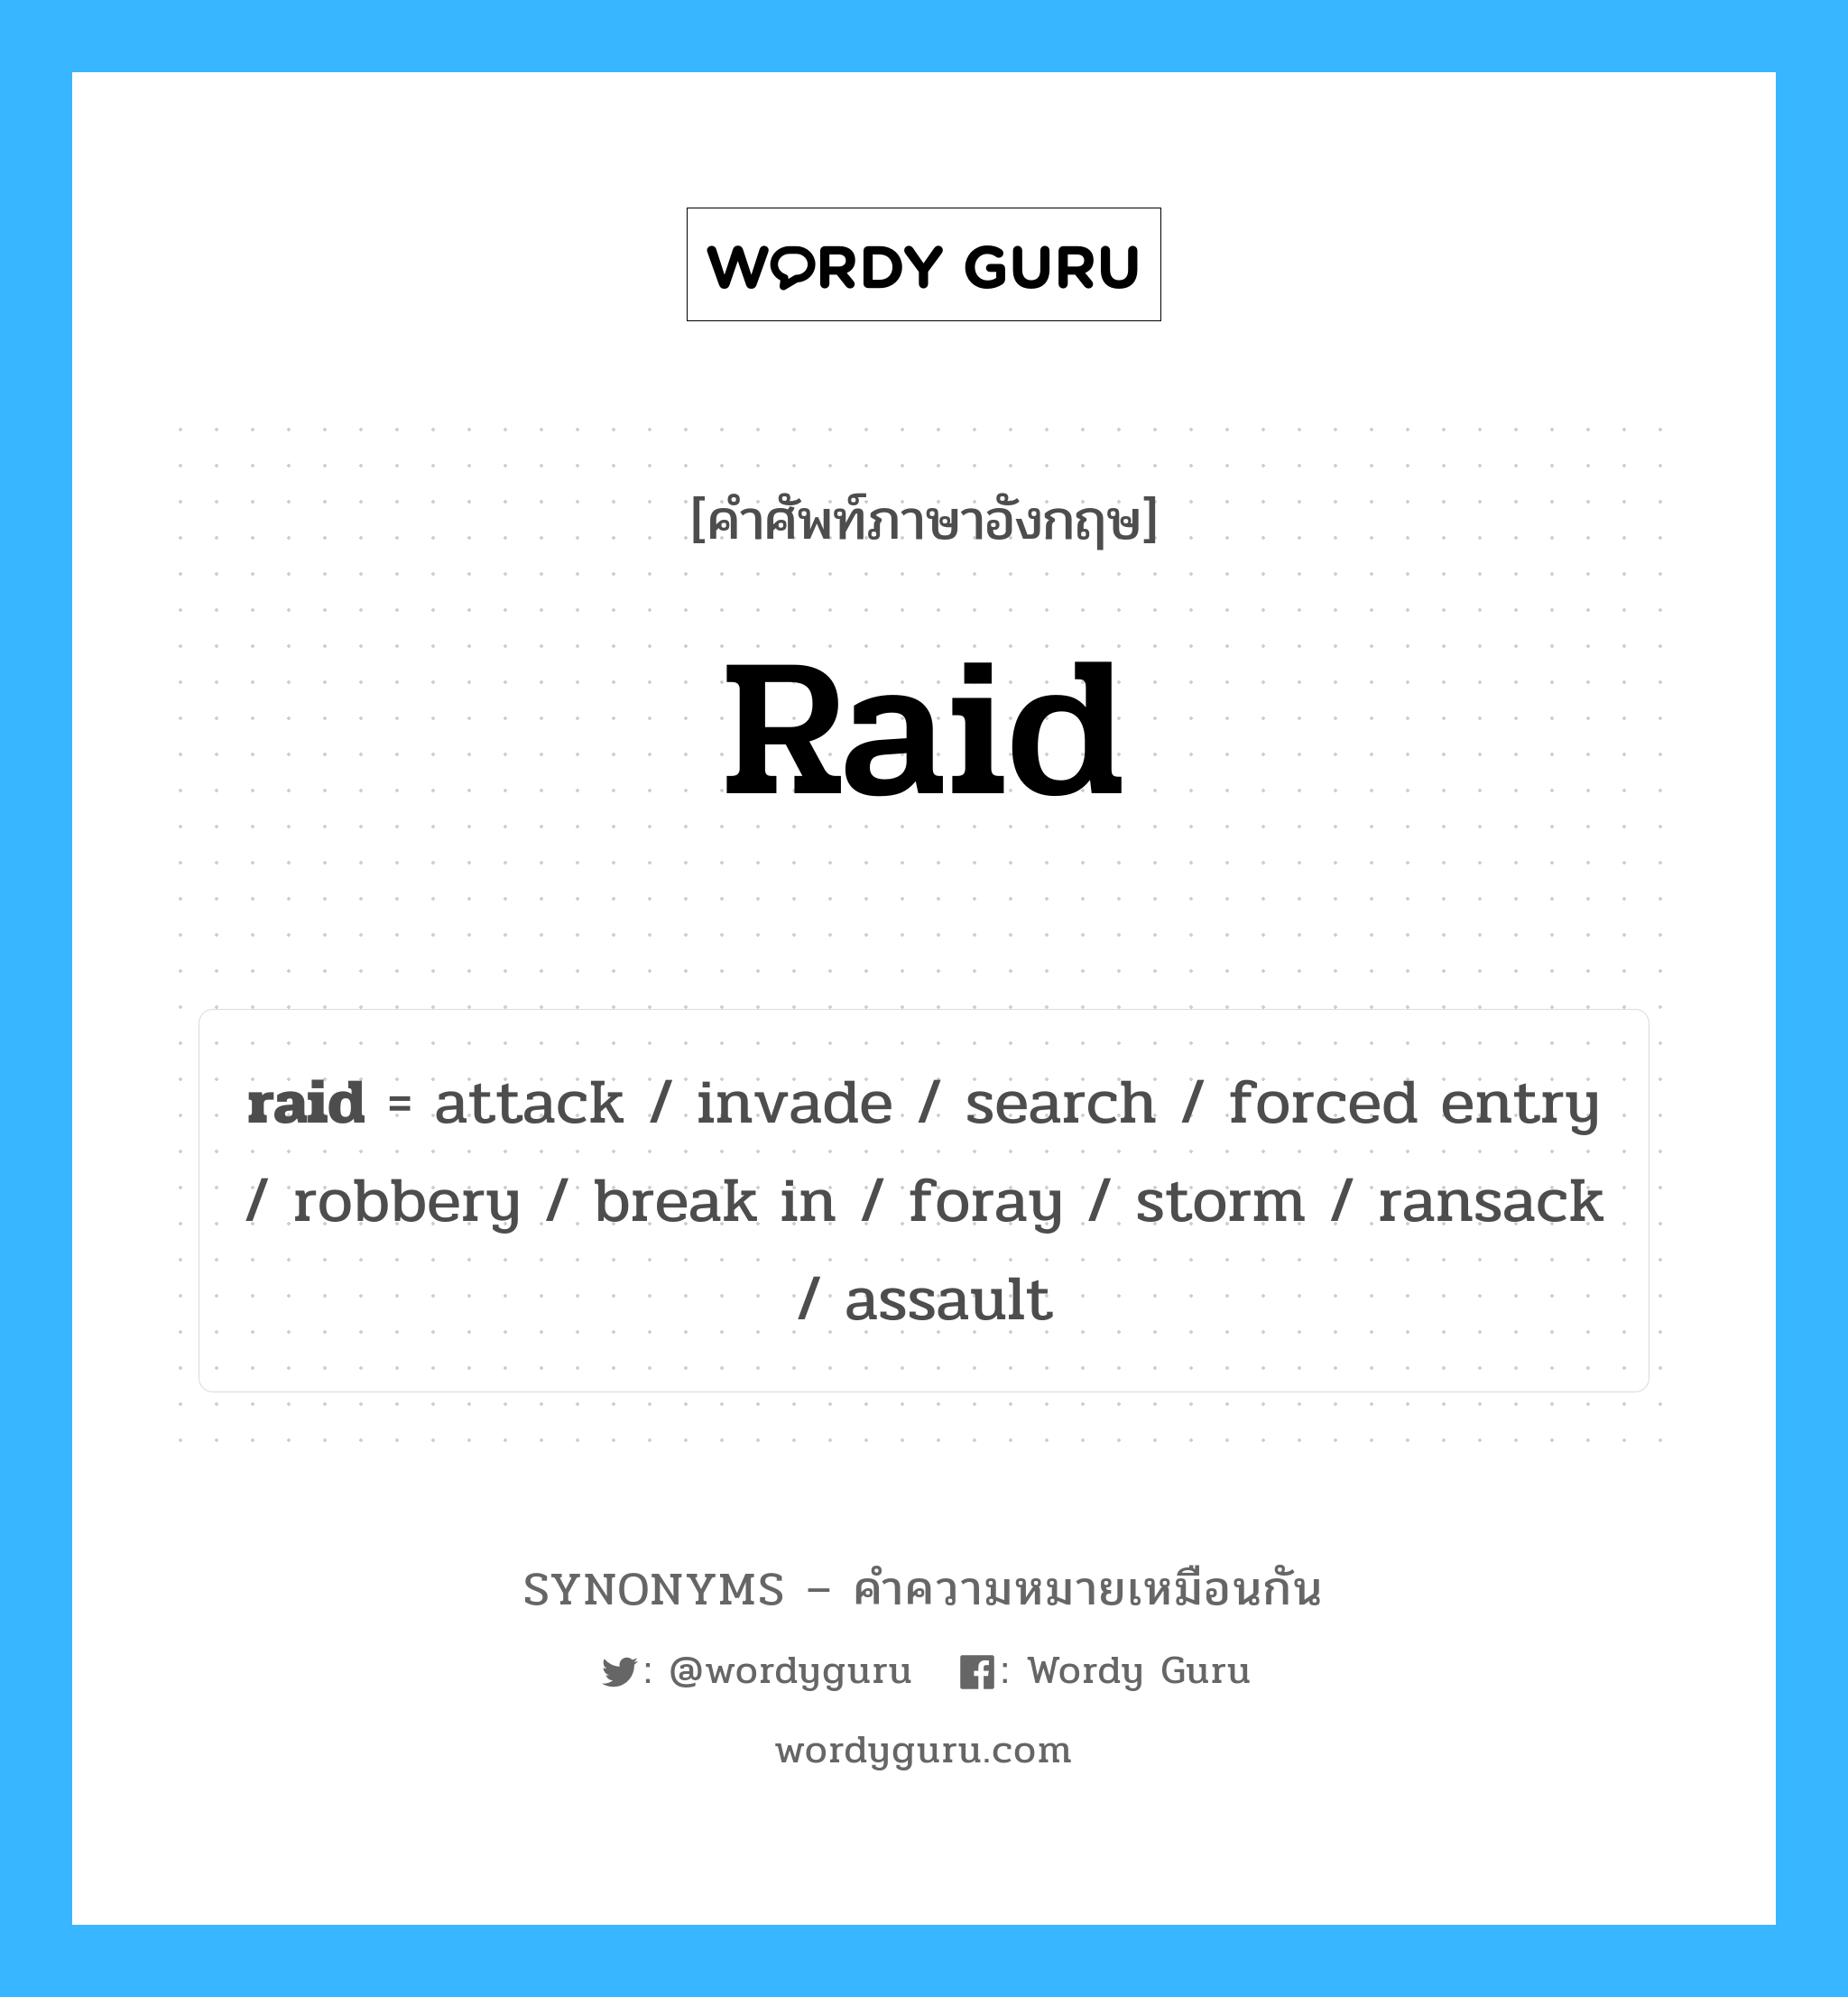 raid เป็นหนึ่งใน attack และมีคำอื่น ๆ อีกดังนี้, คำศัพท์ภาษาอังกฤษ raid ความหมายคล้ายกันกับ attack แปลว่า โจมตี หมวด attack